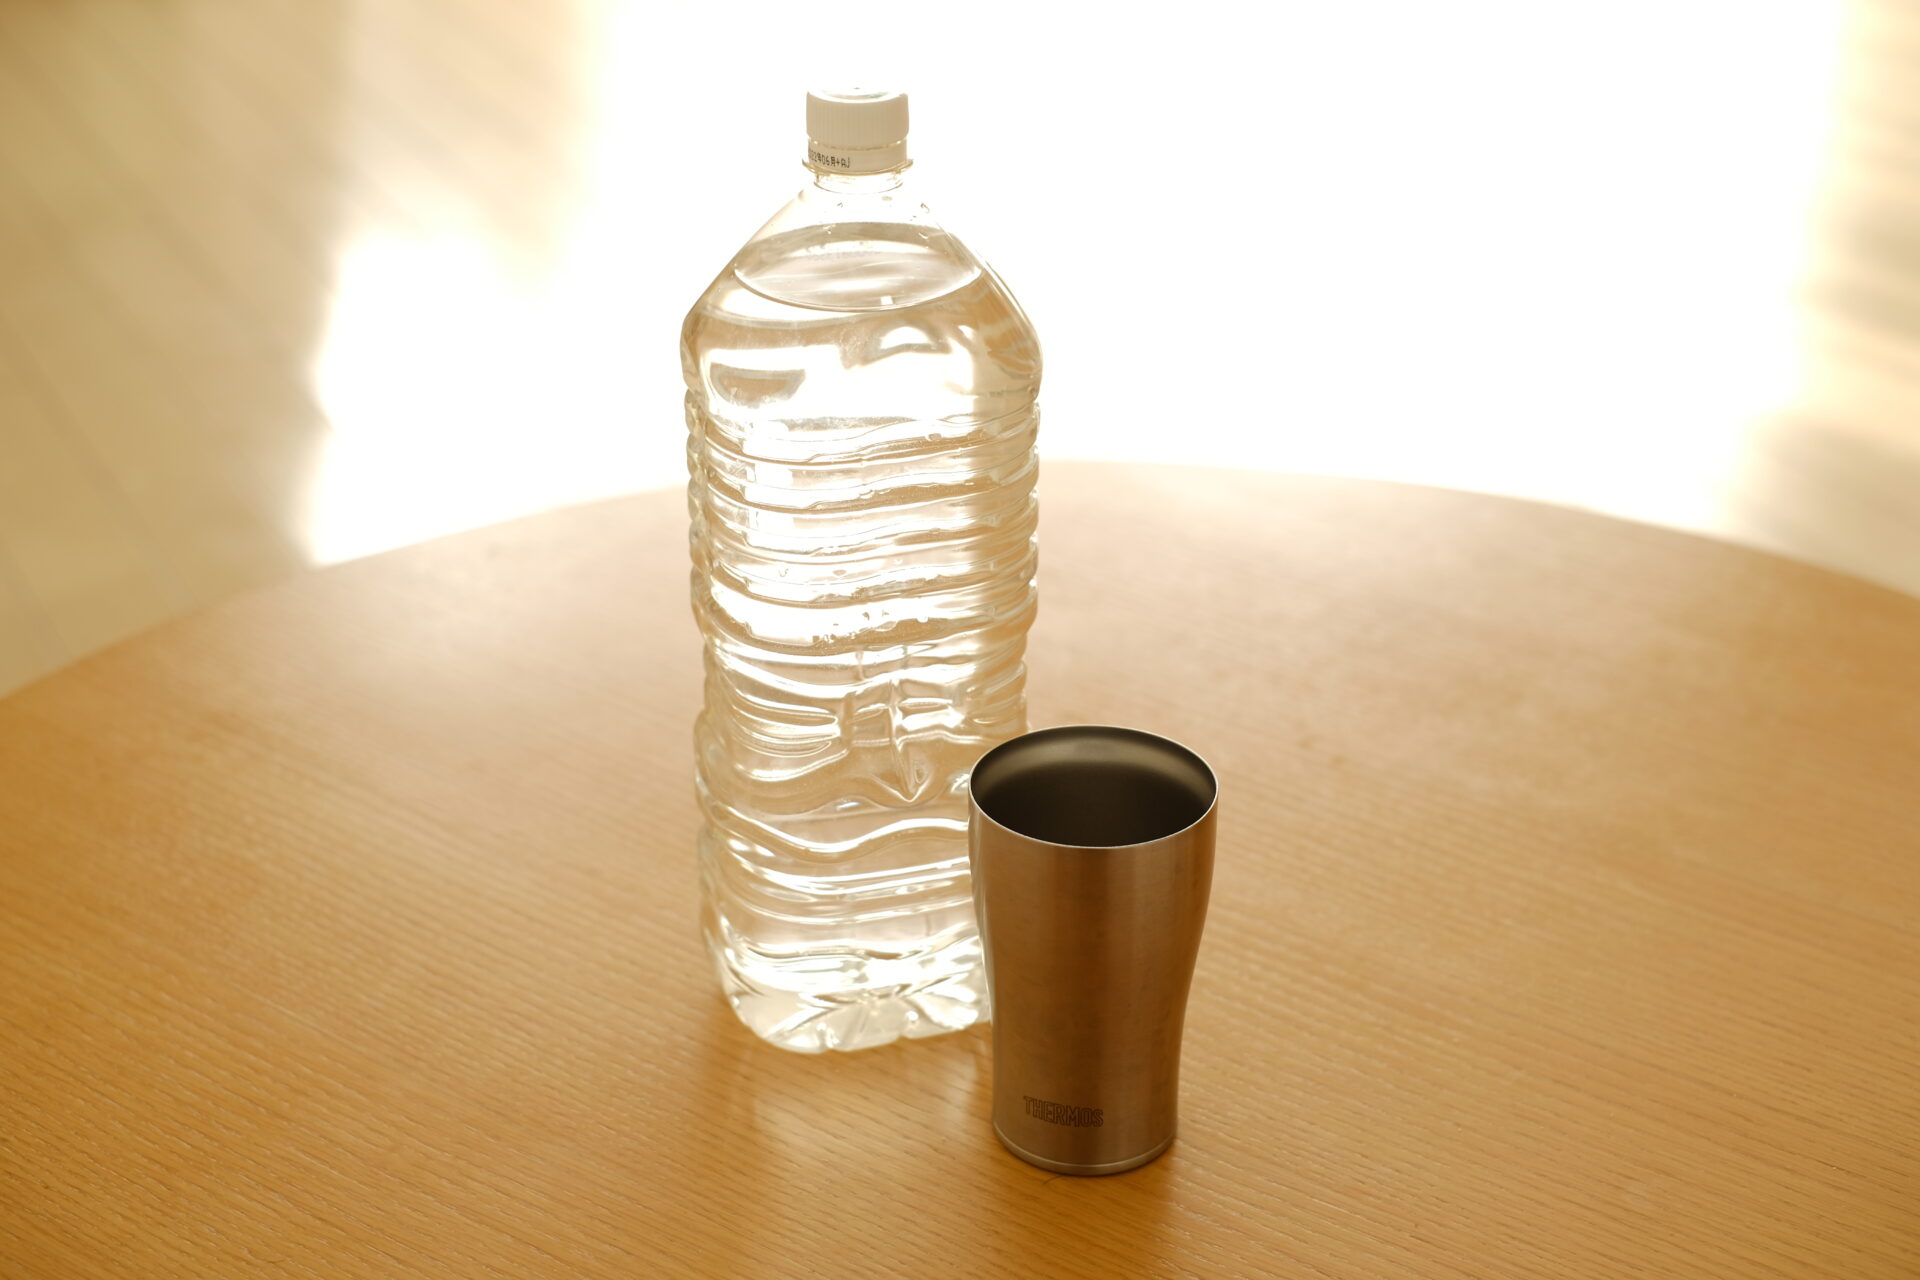 【健康のための習慣】水を1日2リットル飲む